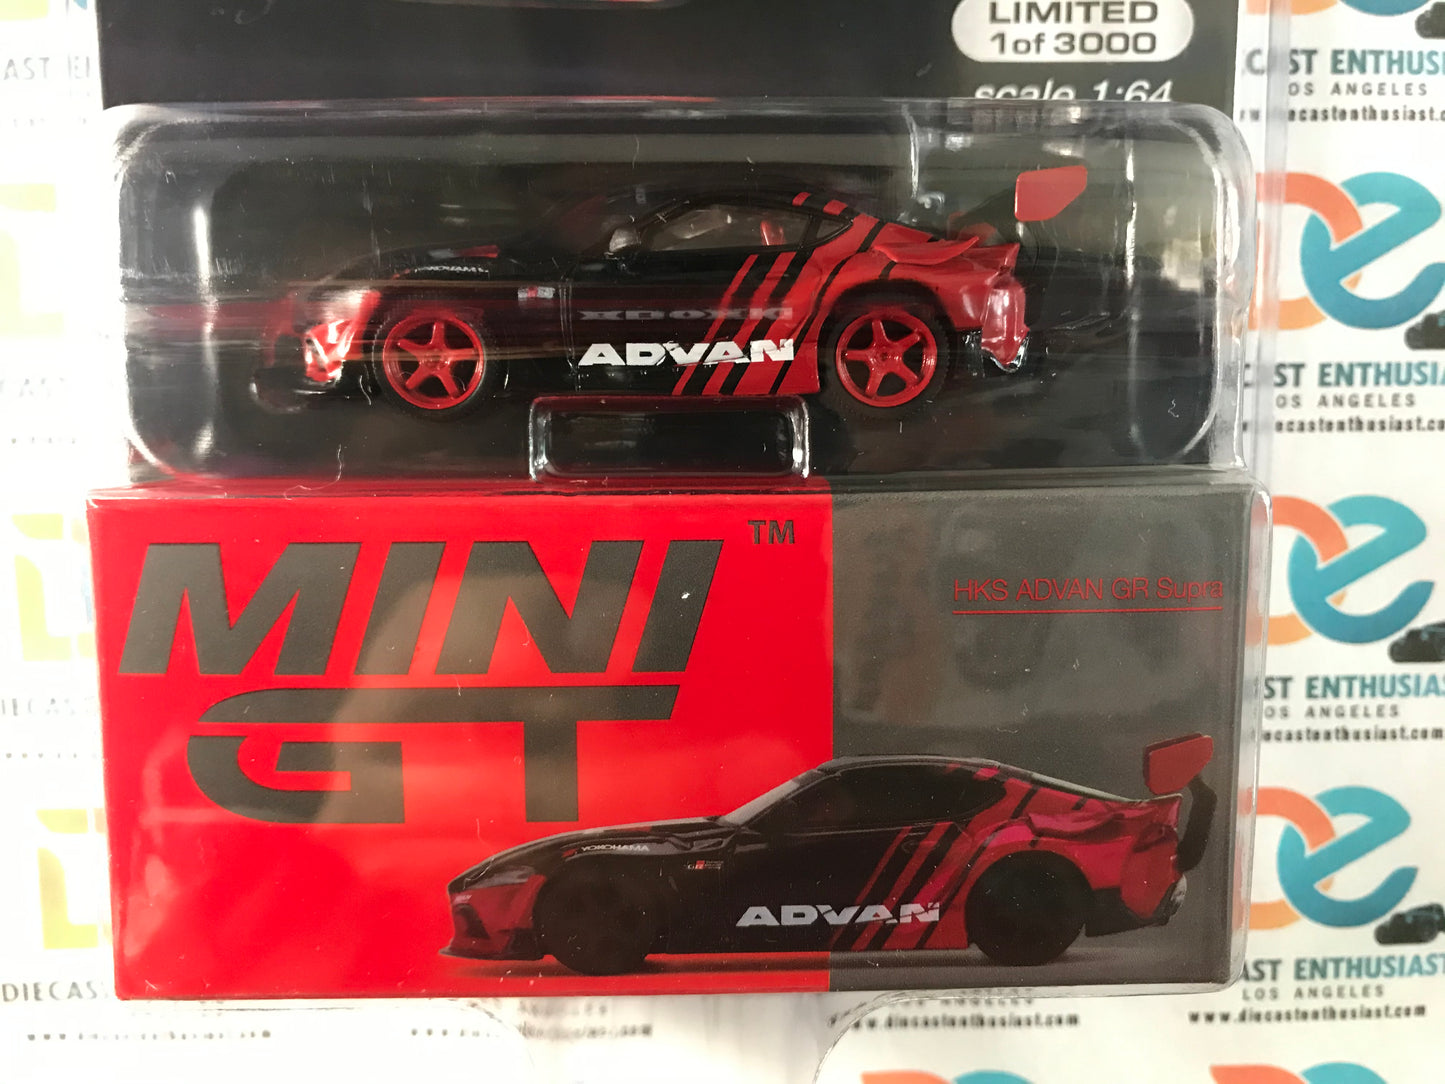 CHASE Mini GT Mijo Exclusives 206 HKS Advan GR Supra 1:64